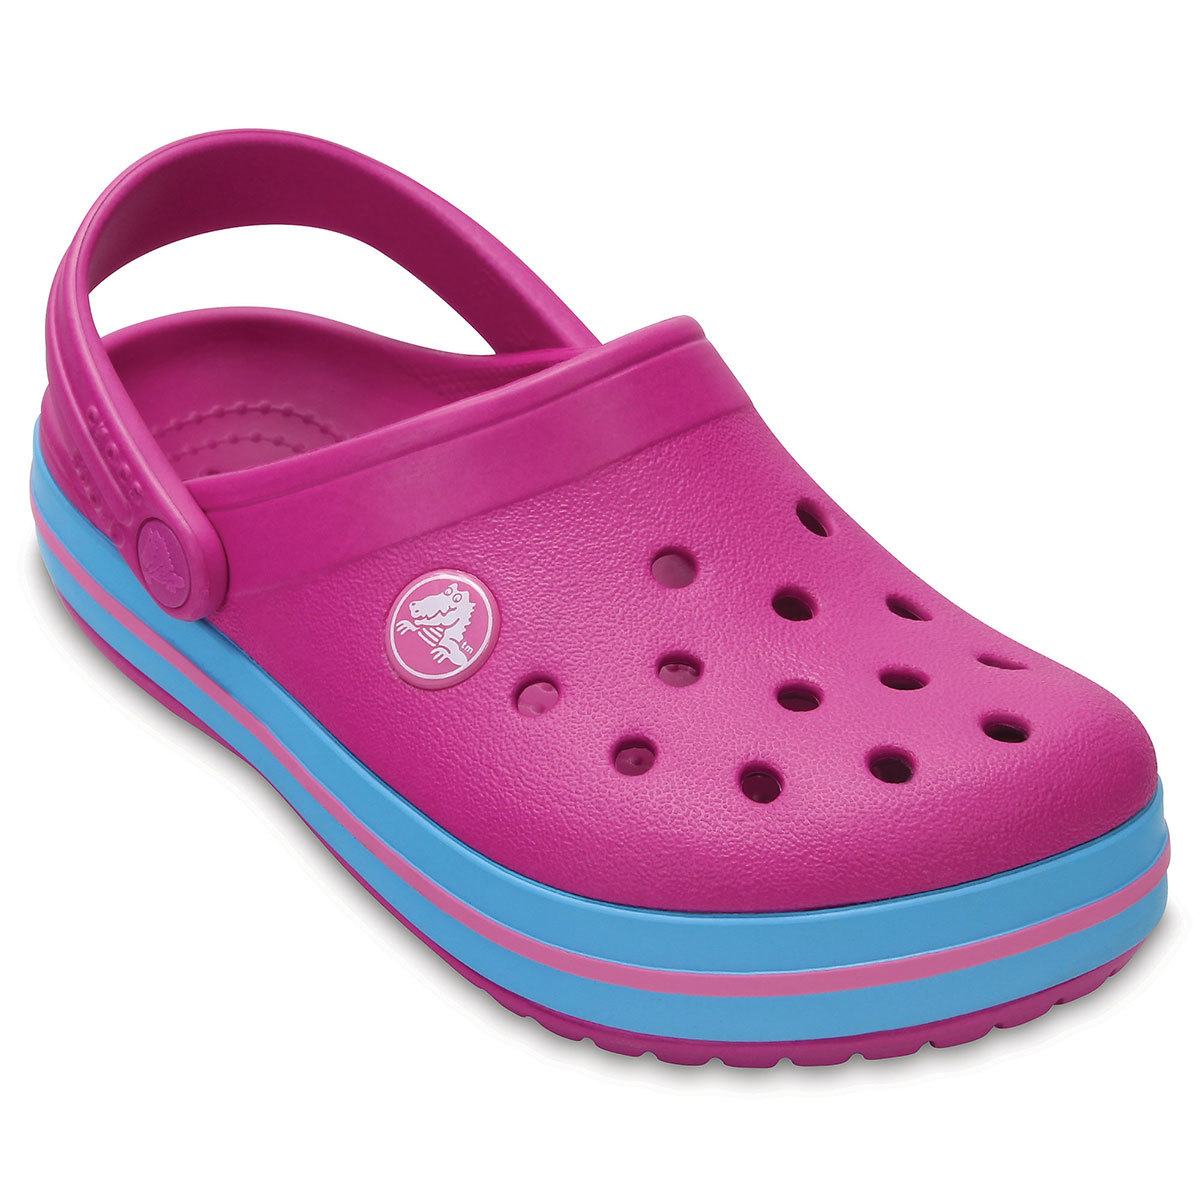 crocs slippers for girls